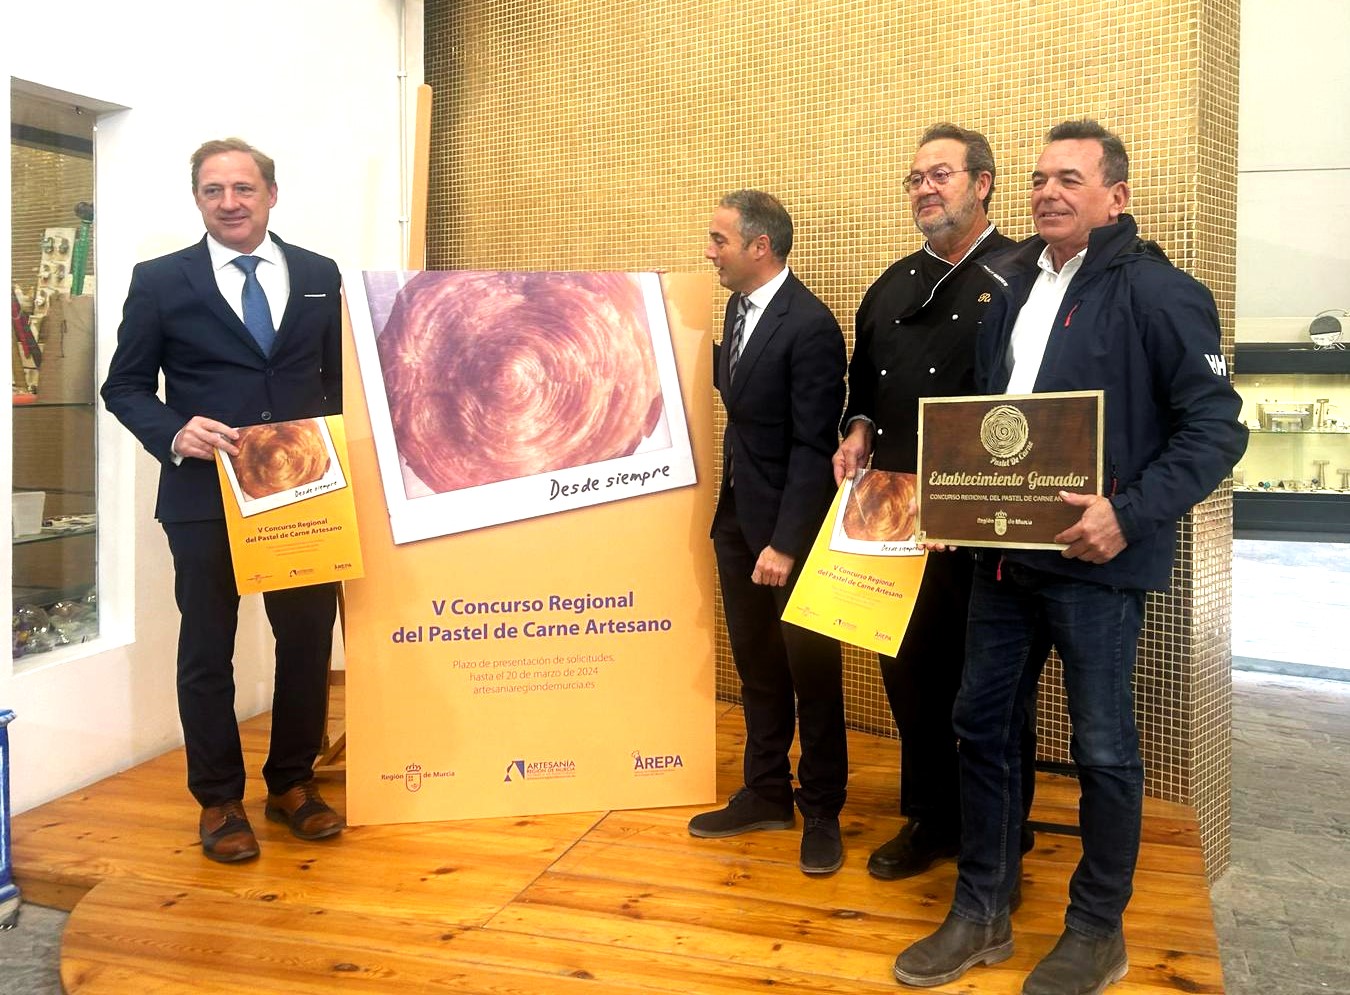 Presentación del V Concurso Regional del Pastel de Carne Artesano